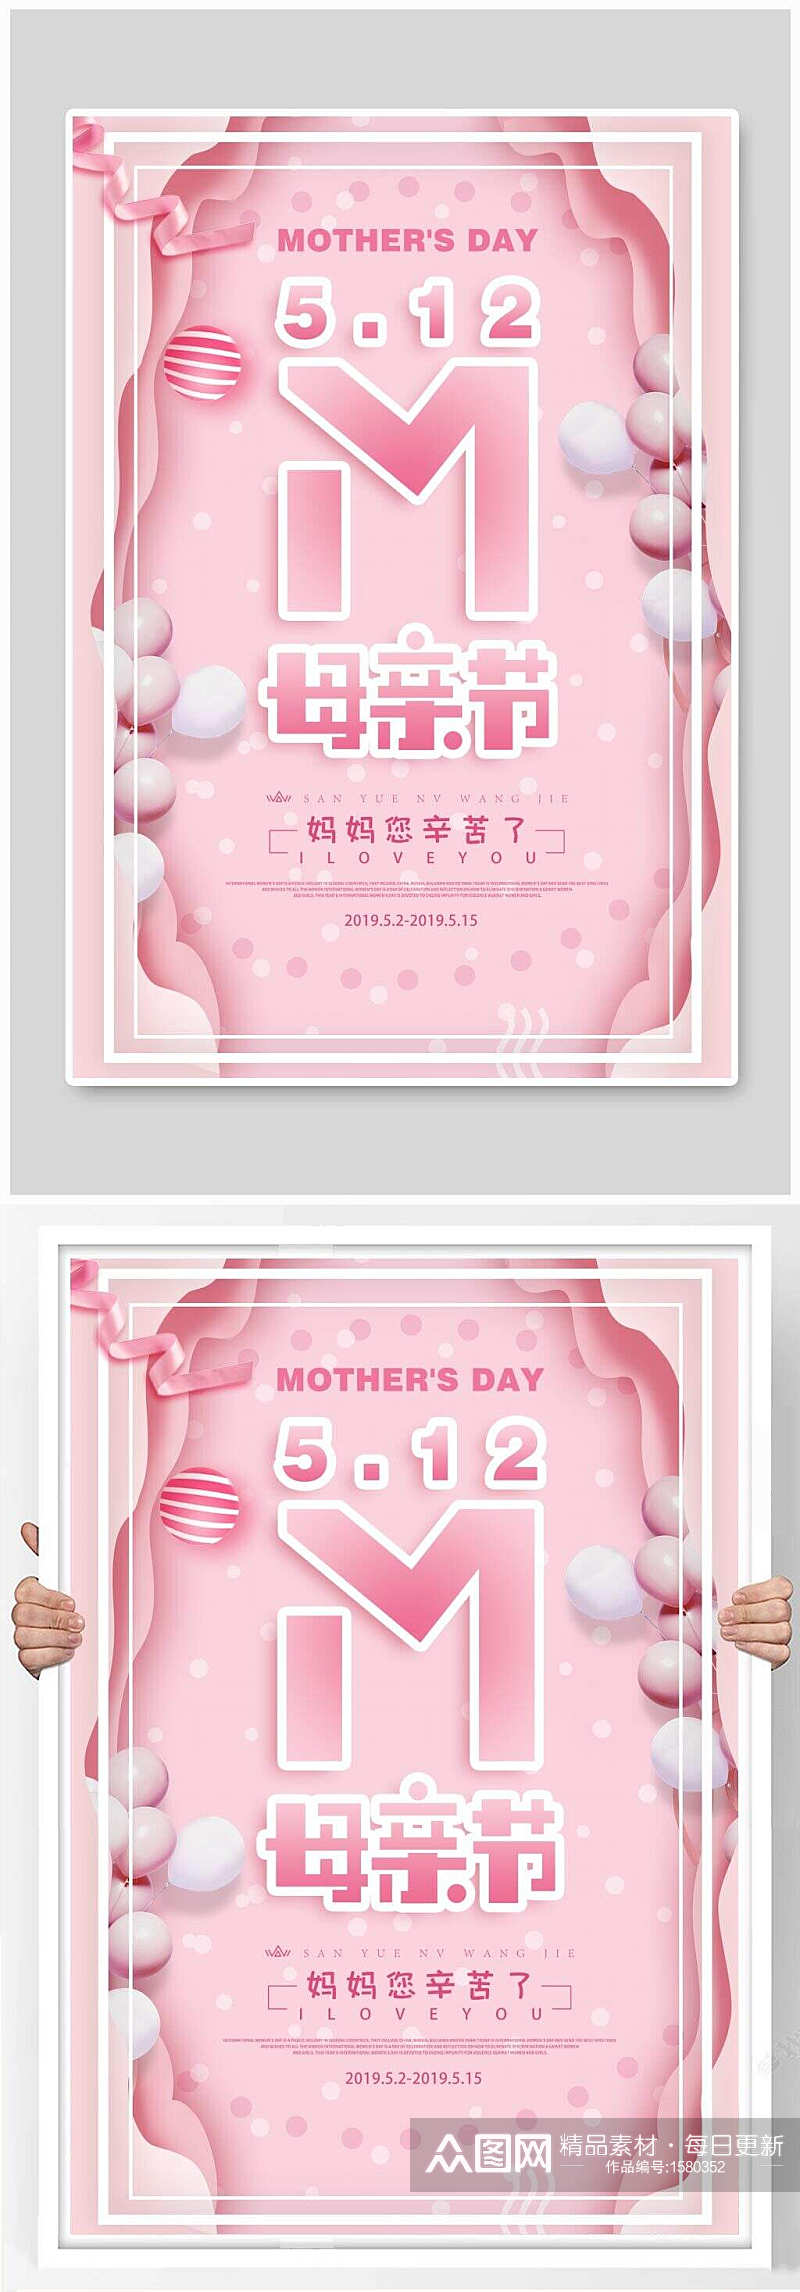 唯美粉色简约母亲节竖版海报素材